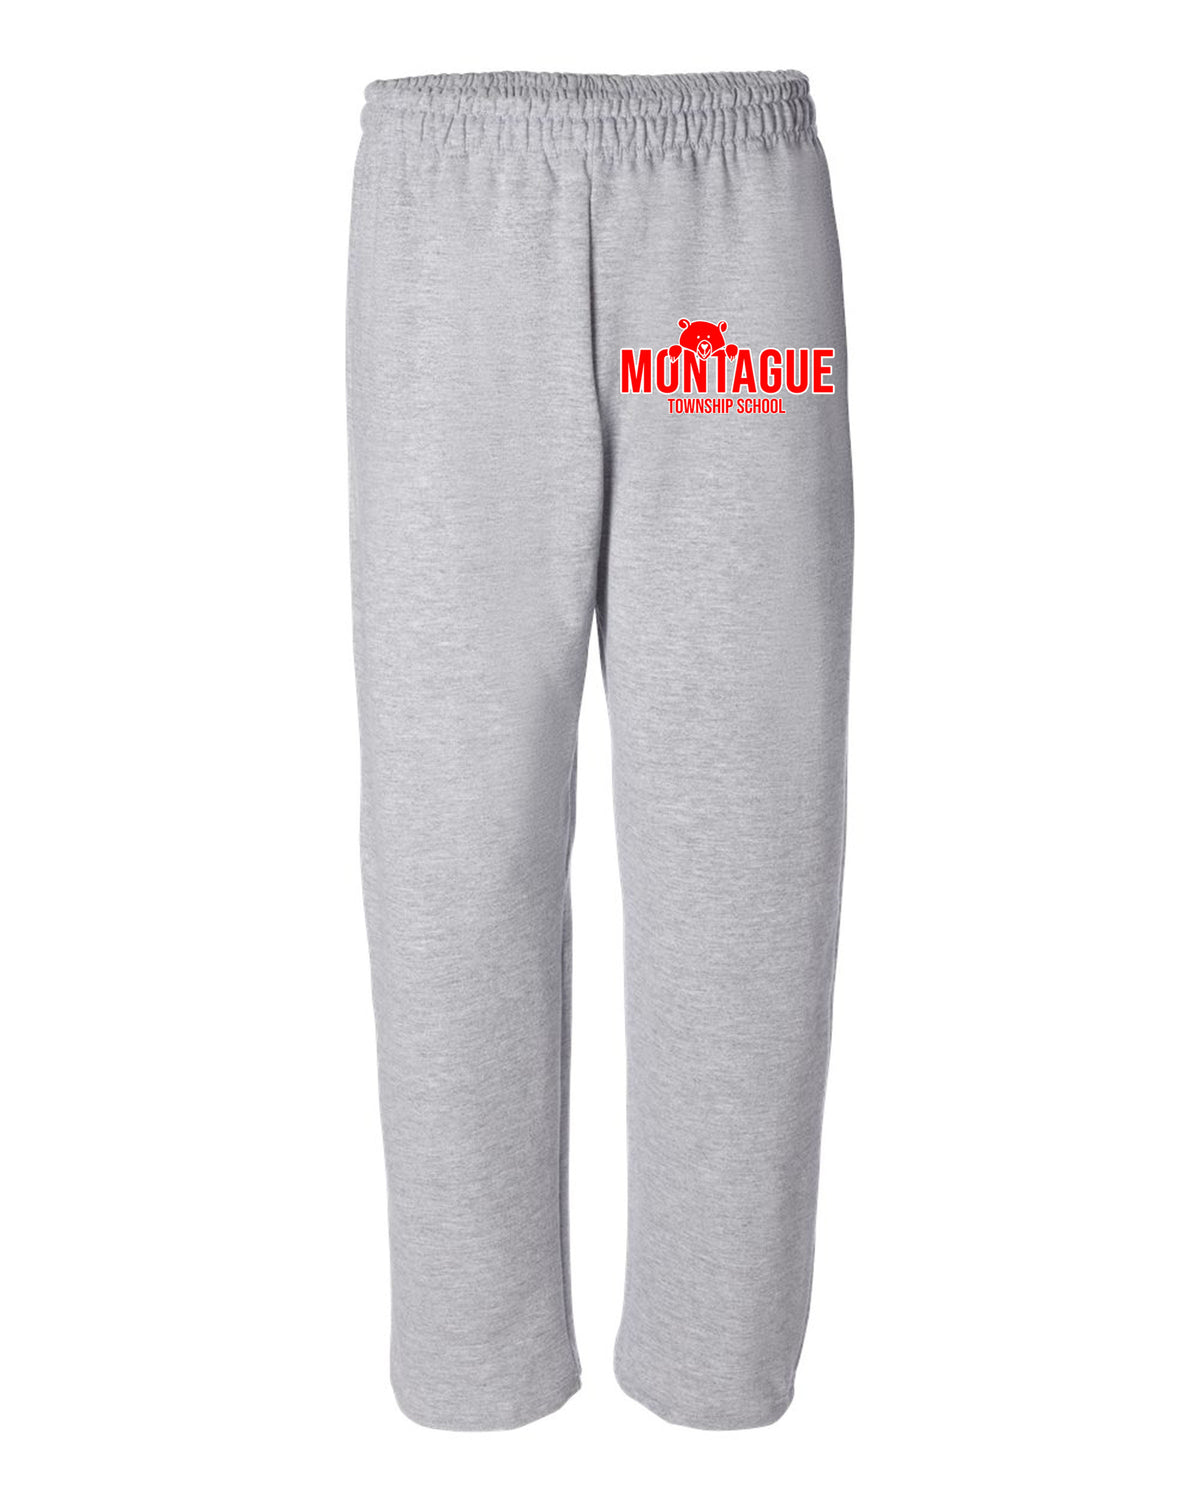 Montague Open Bottom Sweatpants Design 5